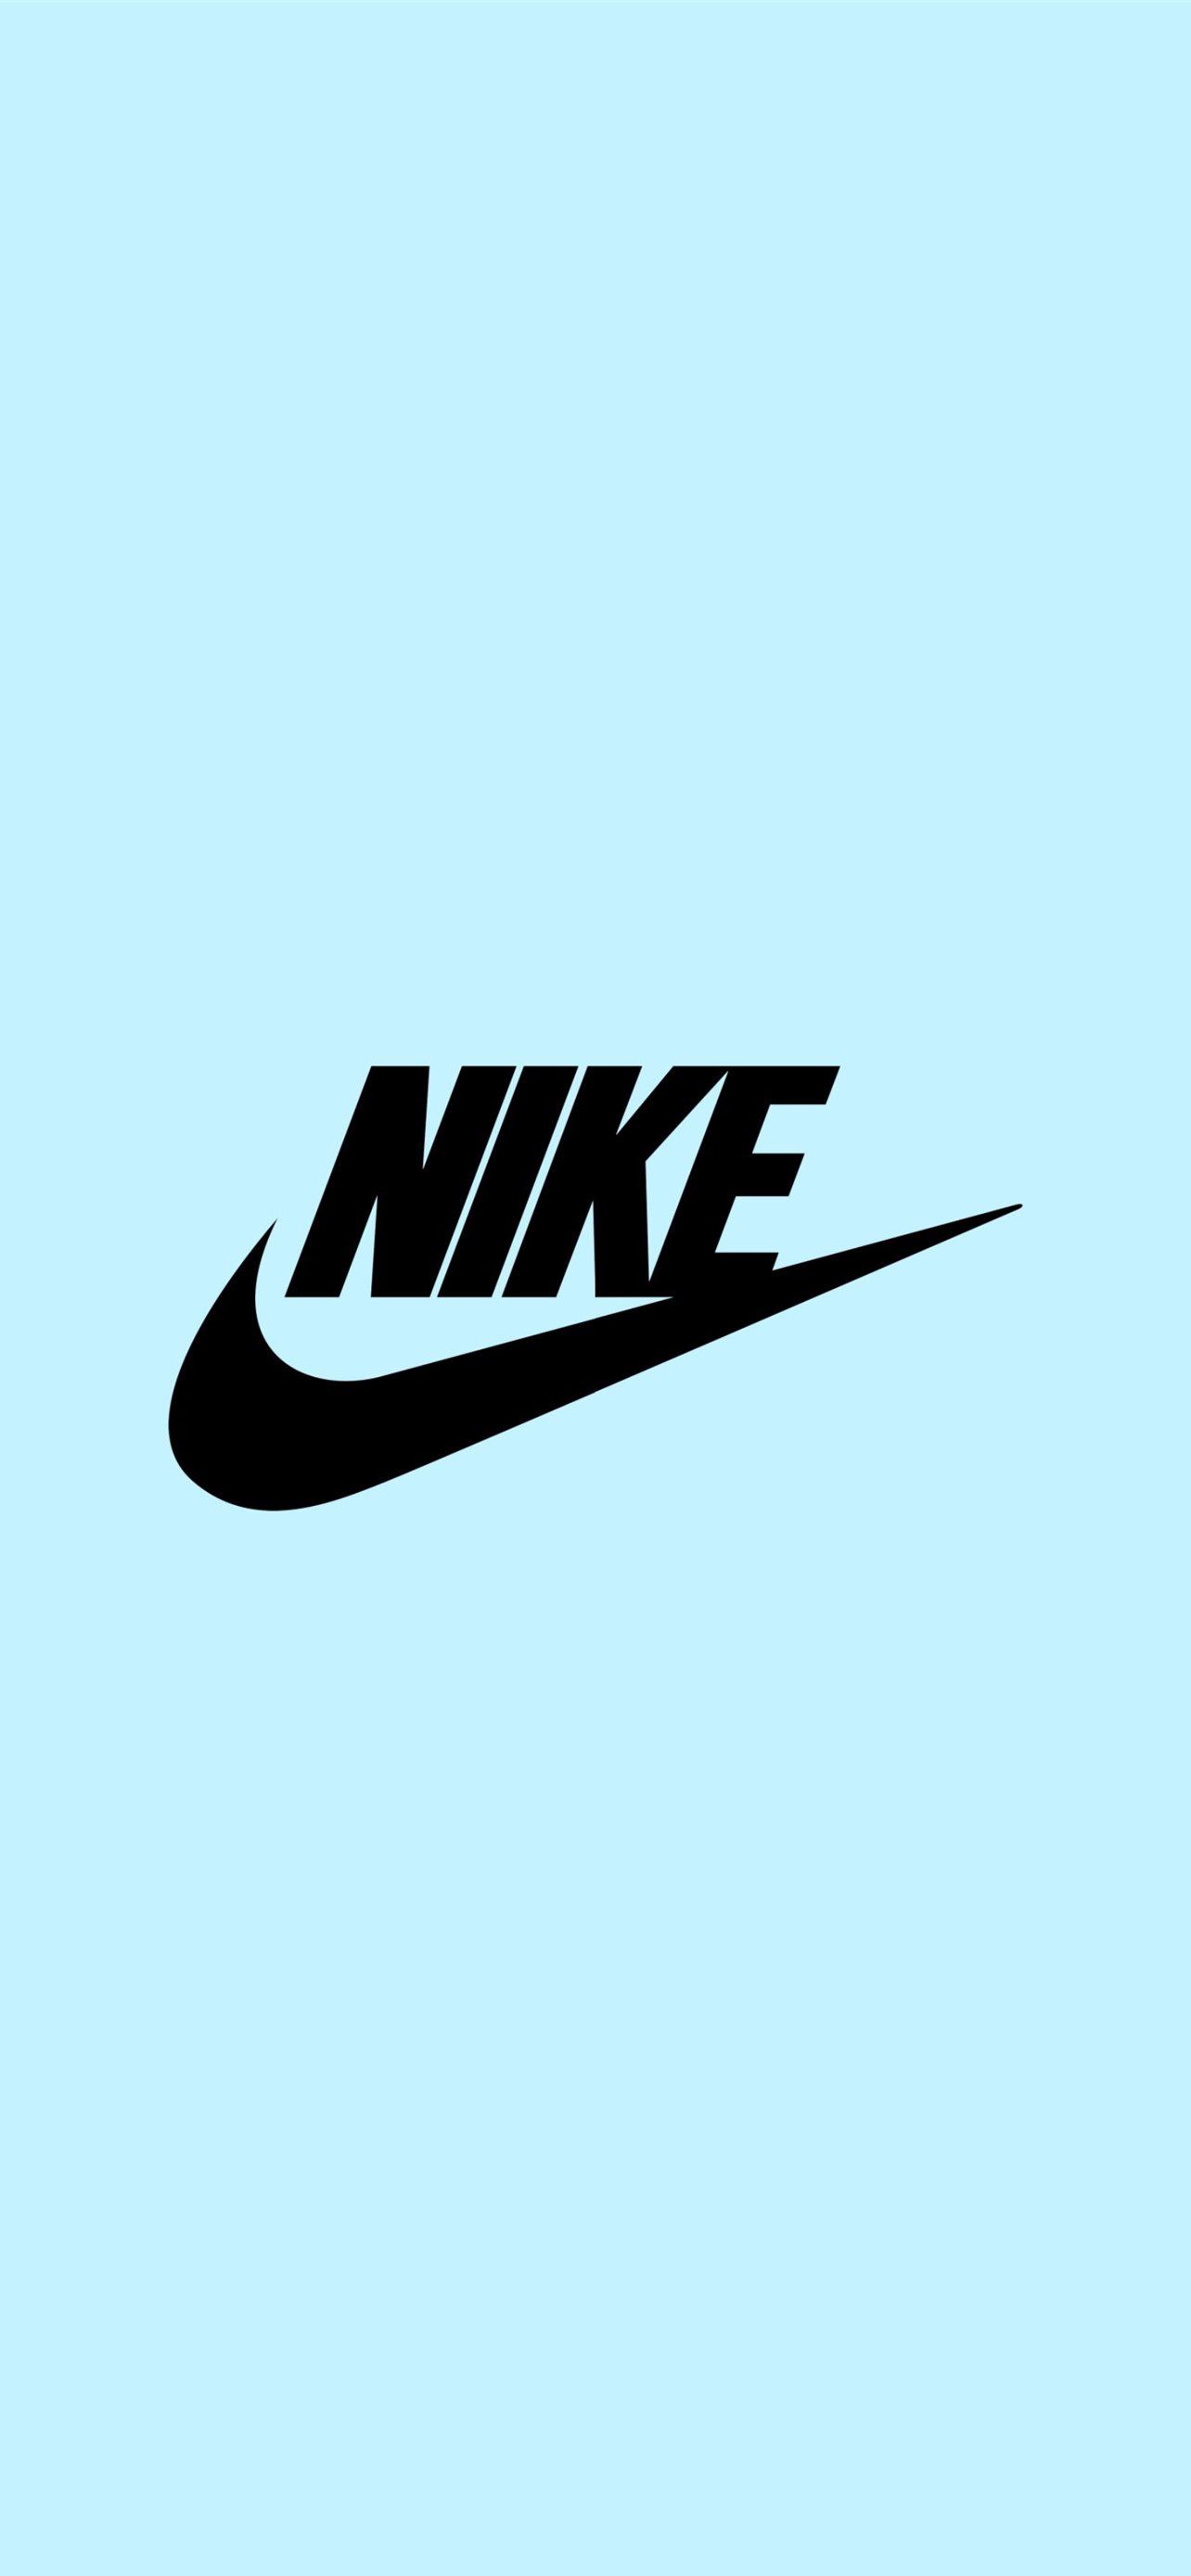 Biểu tượng Nike đã trở thành biểu tượng của sức mạnh và phong cách thể thao. Nếu bạn muốn thưởng thức hình ảnh đầy tính nghệ thuật của logo Nike, thì không thể bỏ qua bức ảnh này.